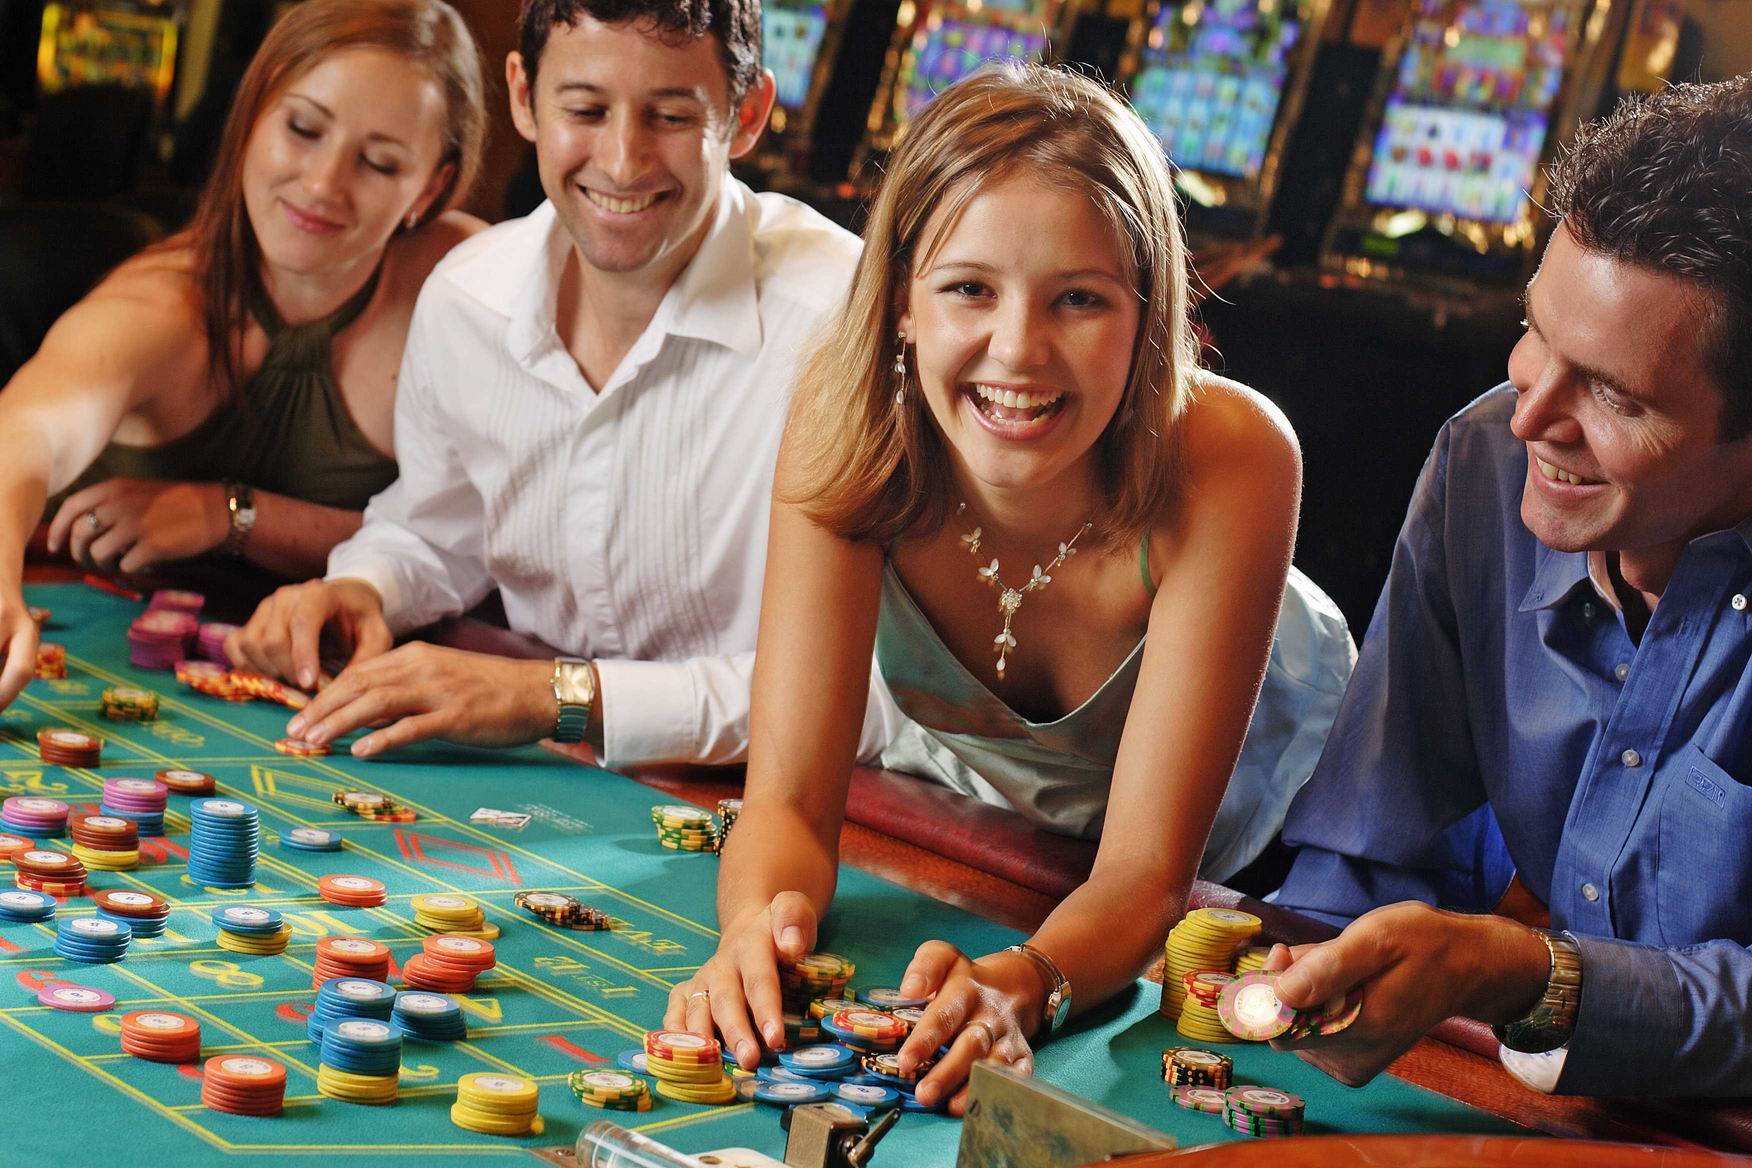 Female Vs Male Casino Players ⋆